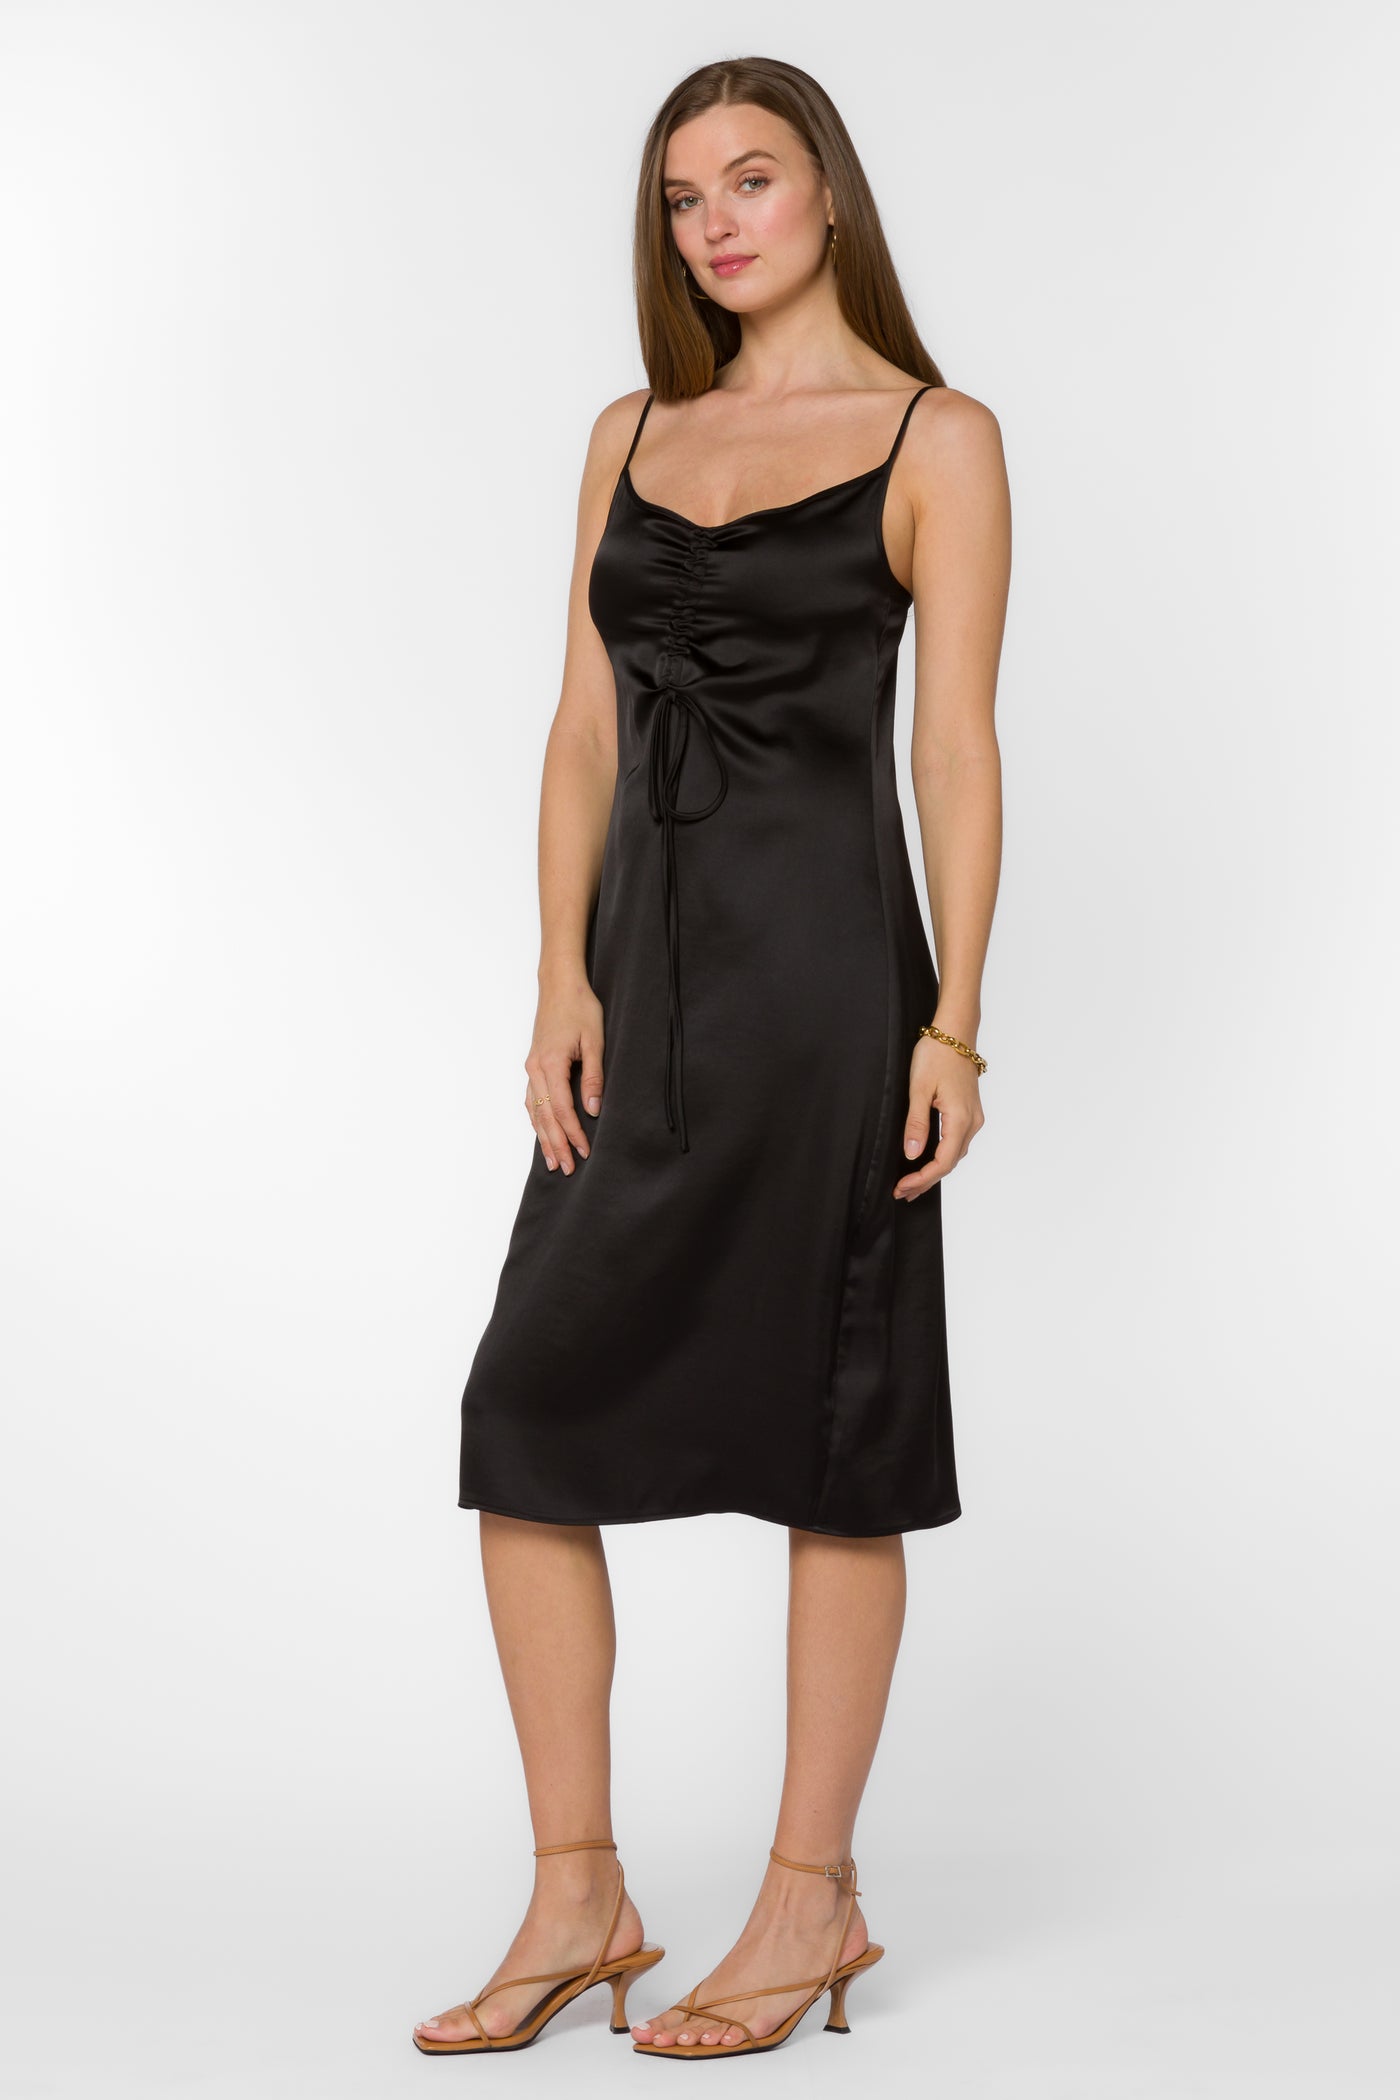 Livvy Black Dress - Dresses - Velvet Heart Clothing